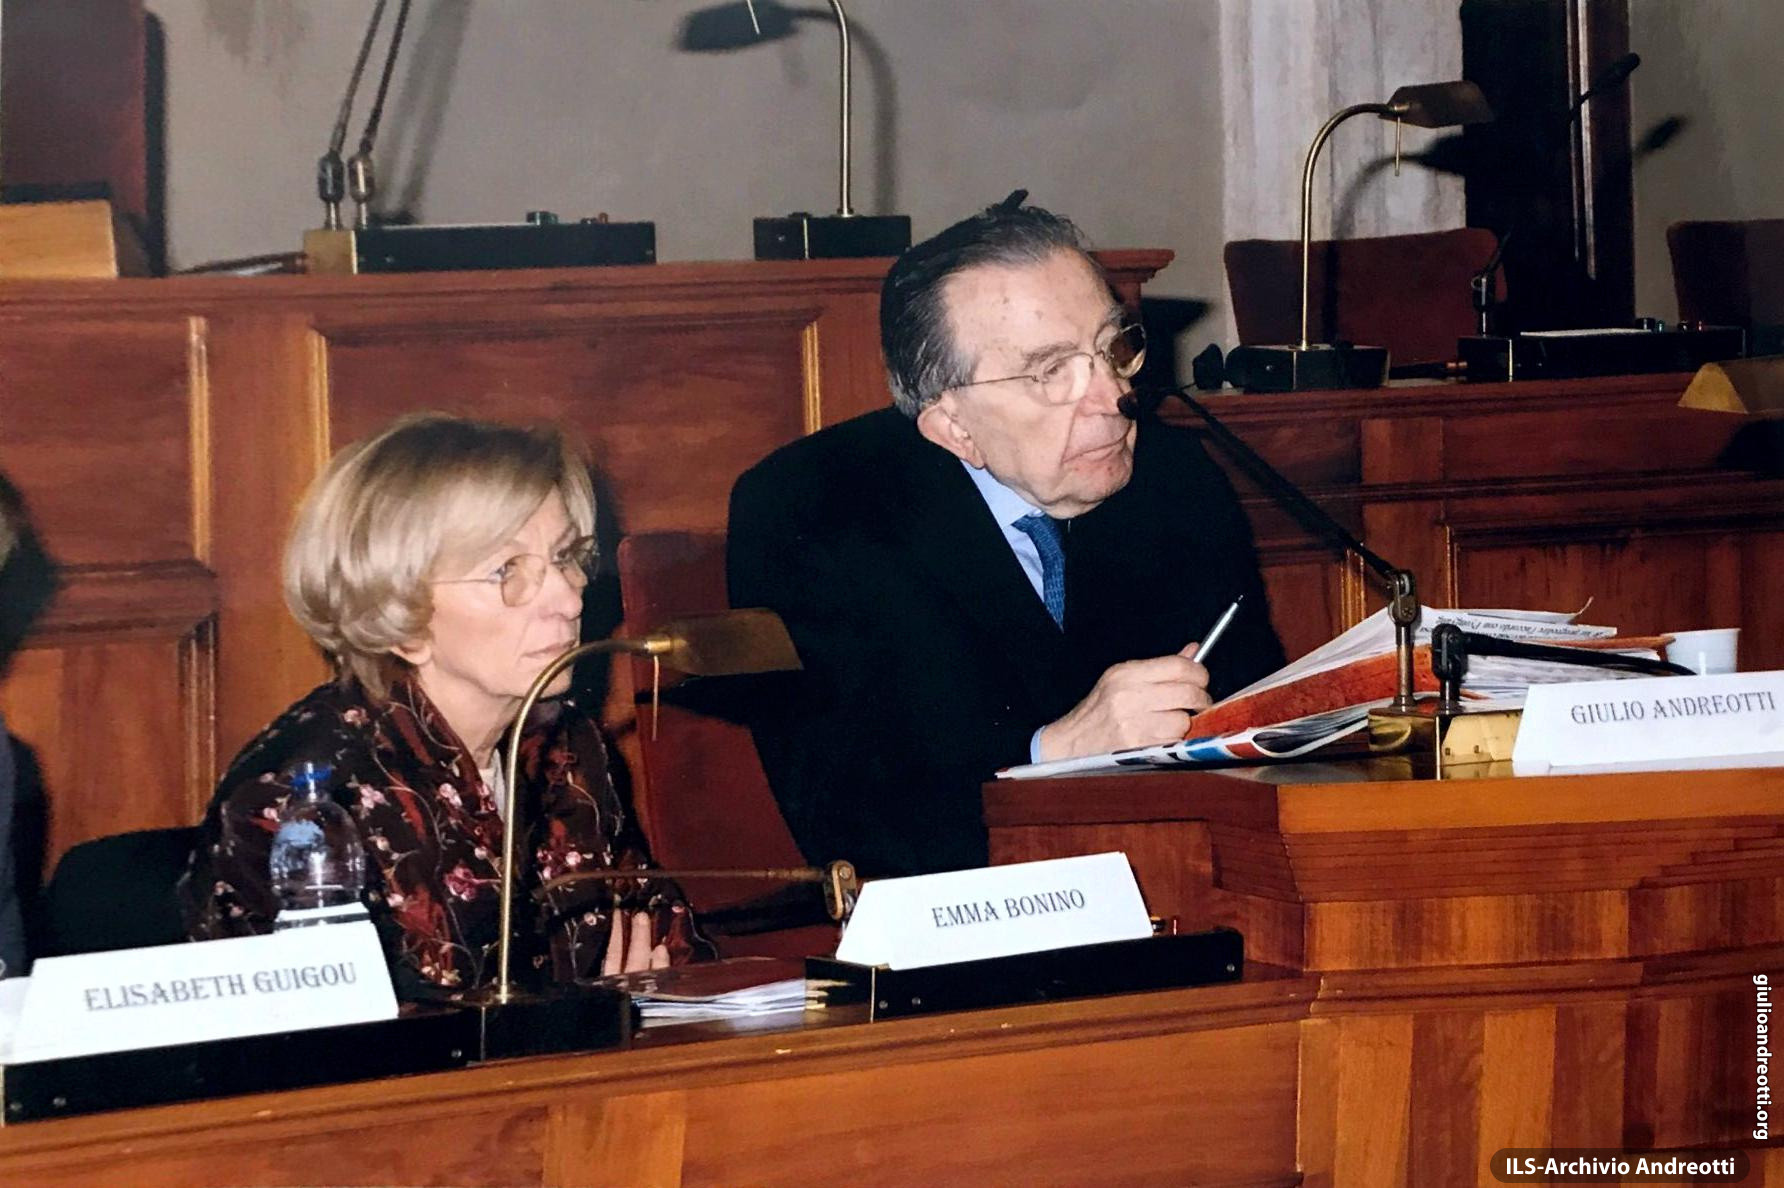 23 marzo 2007. Con Emma Bonino in Campidoglio per il convegno “Cinquant’anni di Europa: Europa anno zero?” promosso dalla Fondazione Alcide De Gasperi